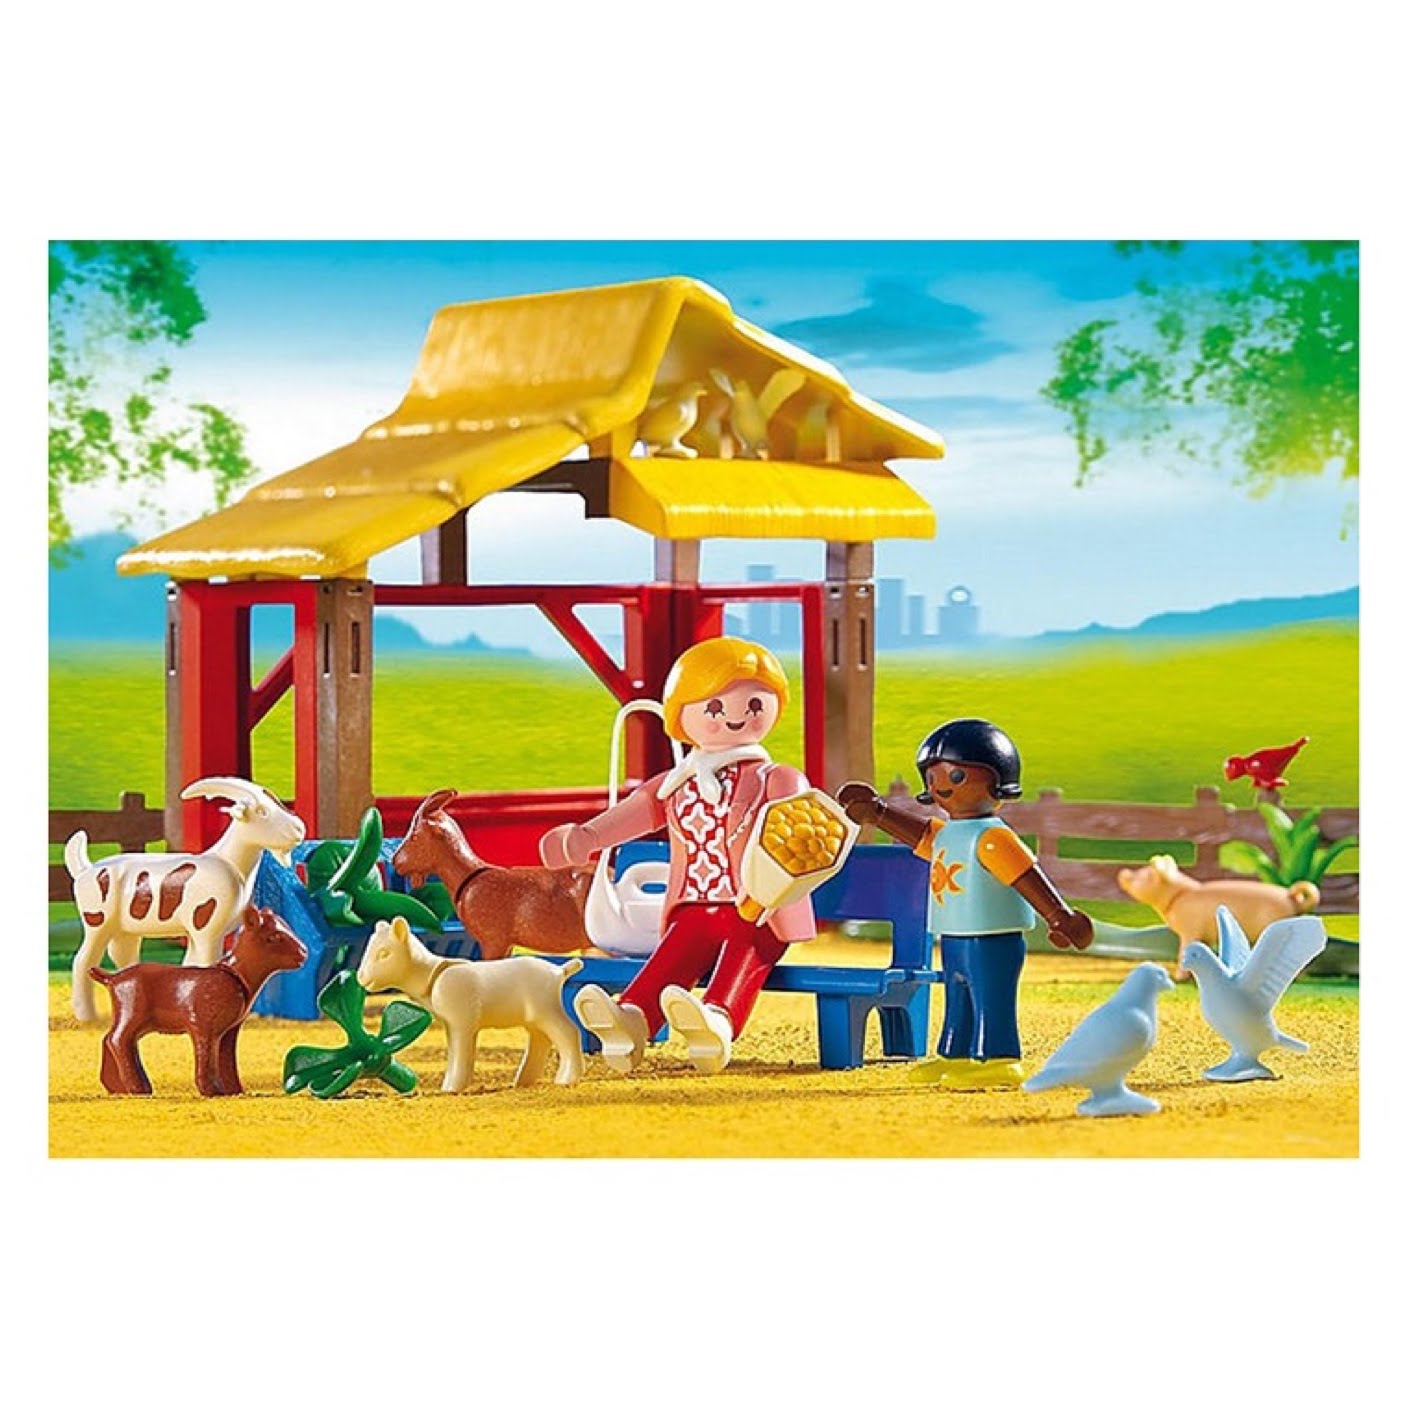 Playmobil 4851 - Lauksaimniecība ar dzīvniekiem